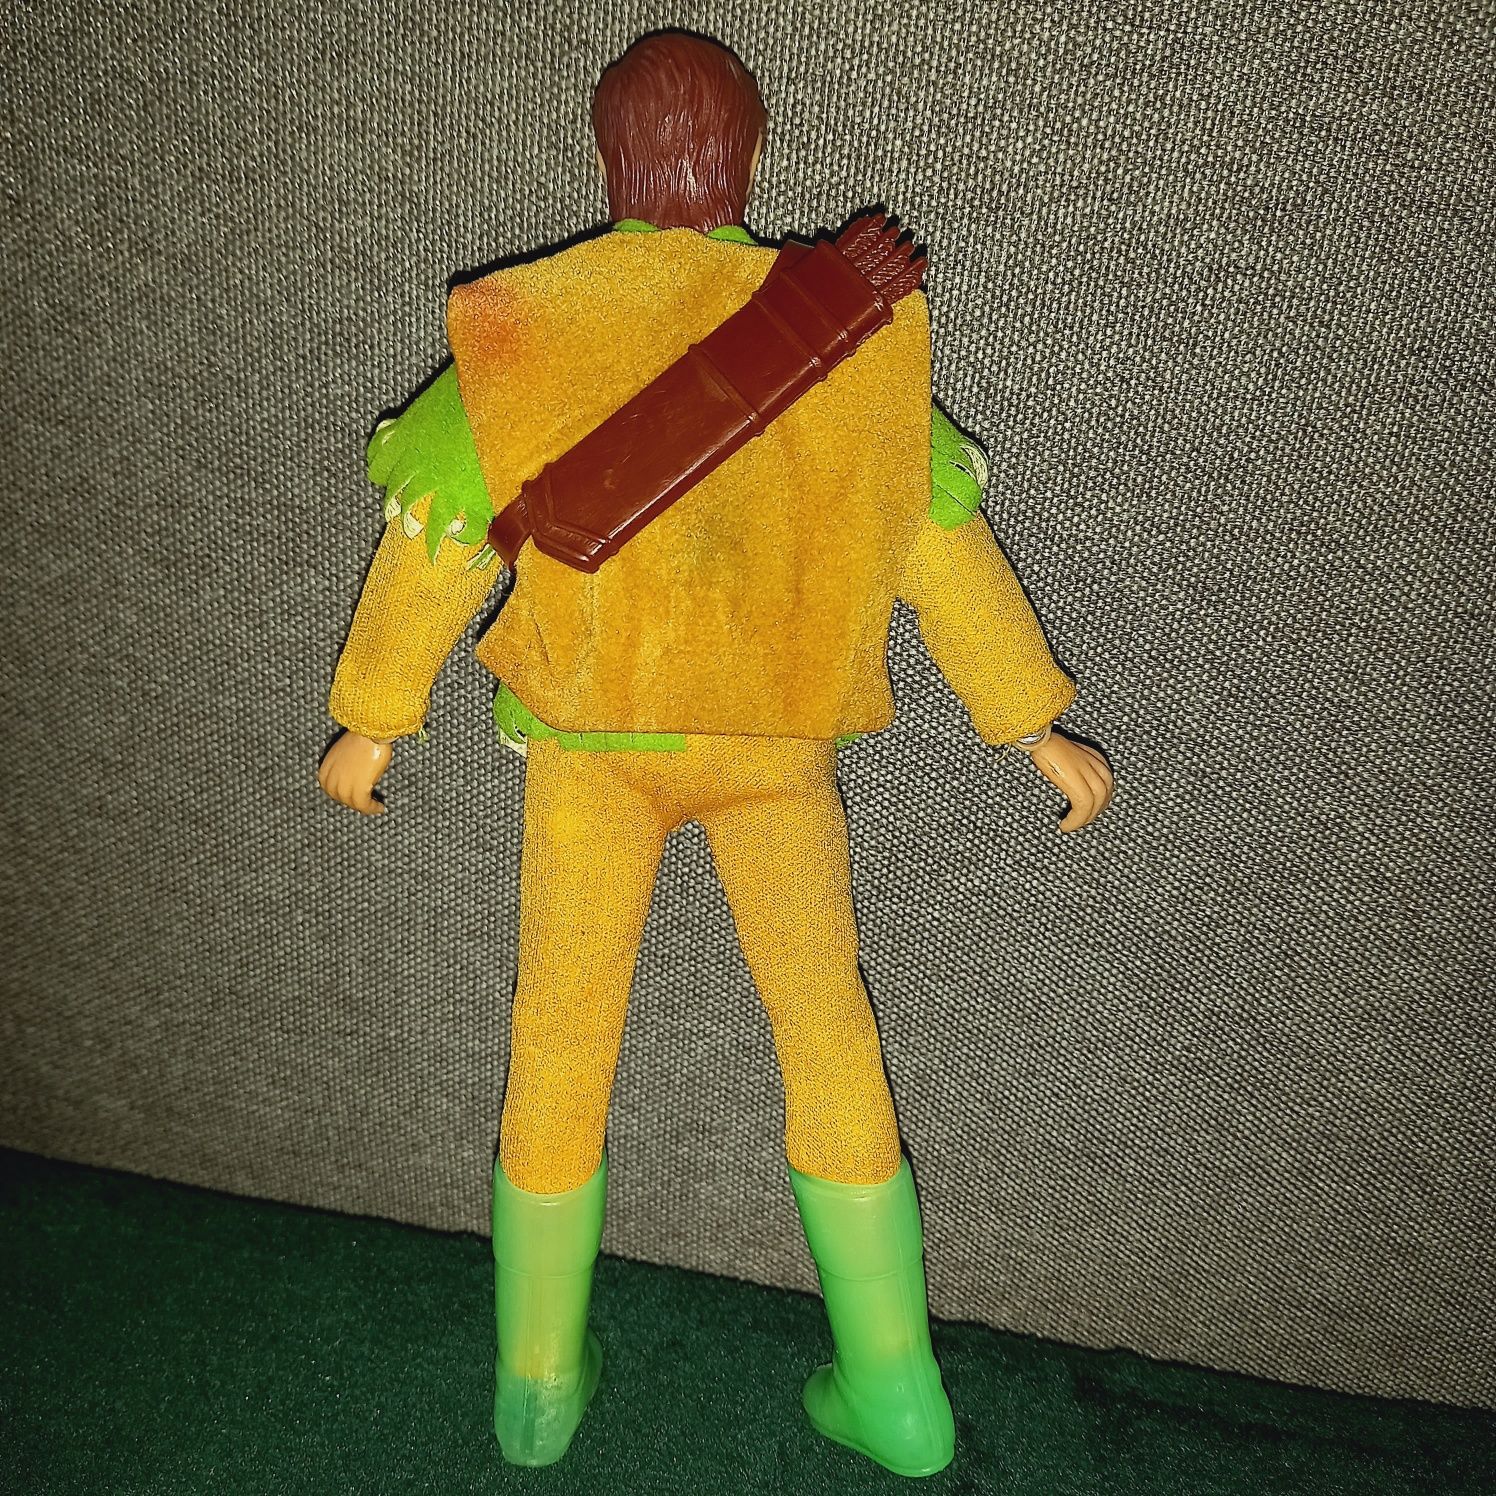 Păpușă Robin Hood,Foarte RARA, Mattel - Mego Corp 1974